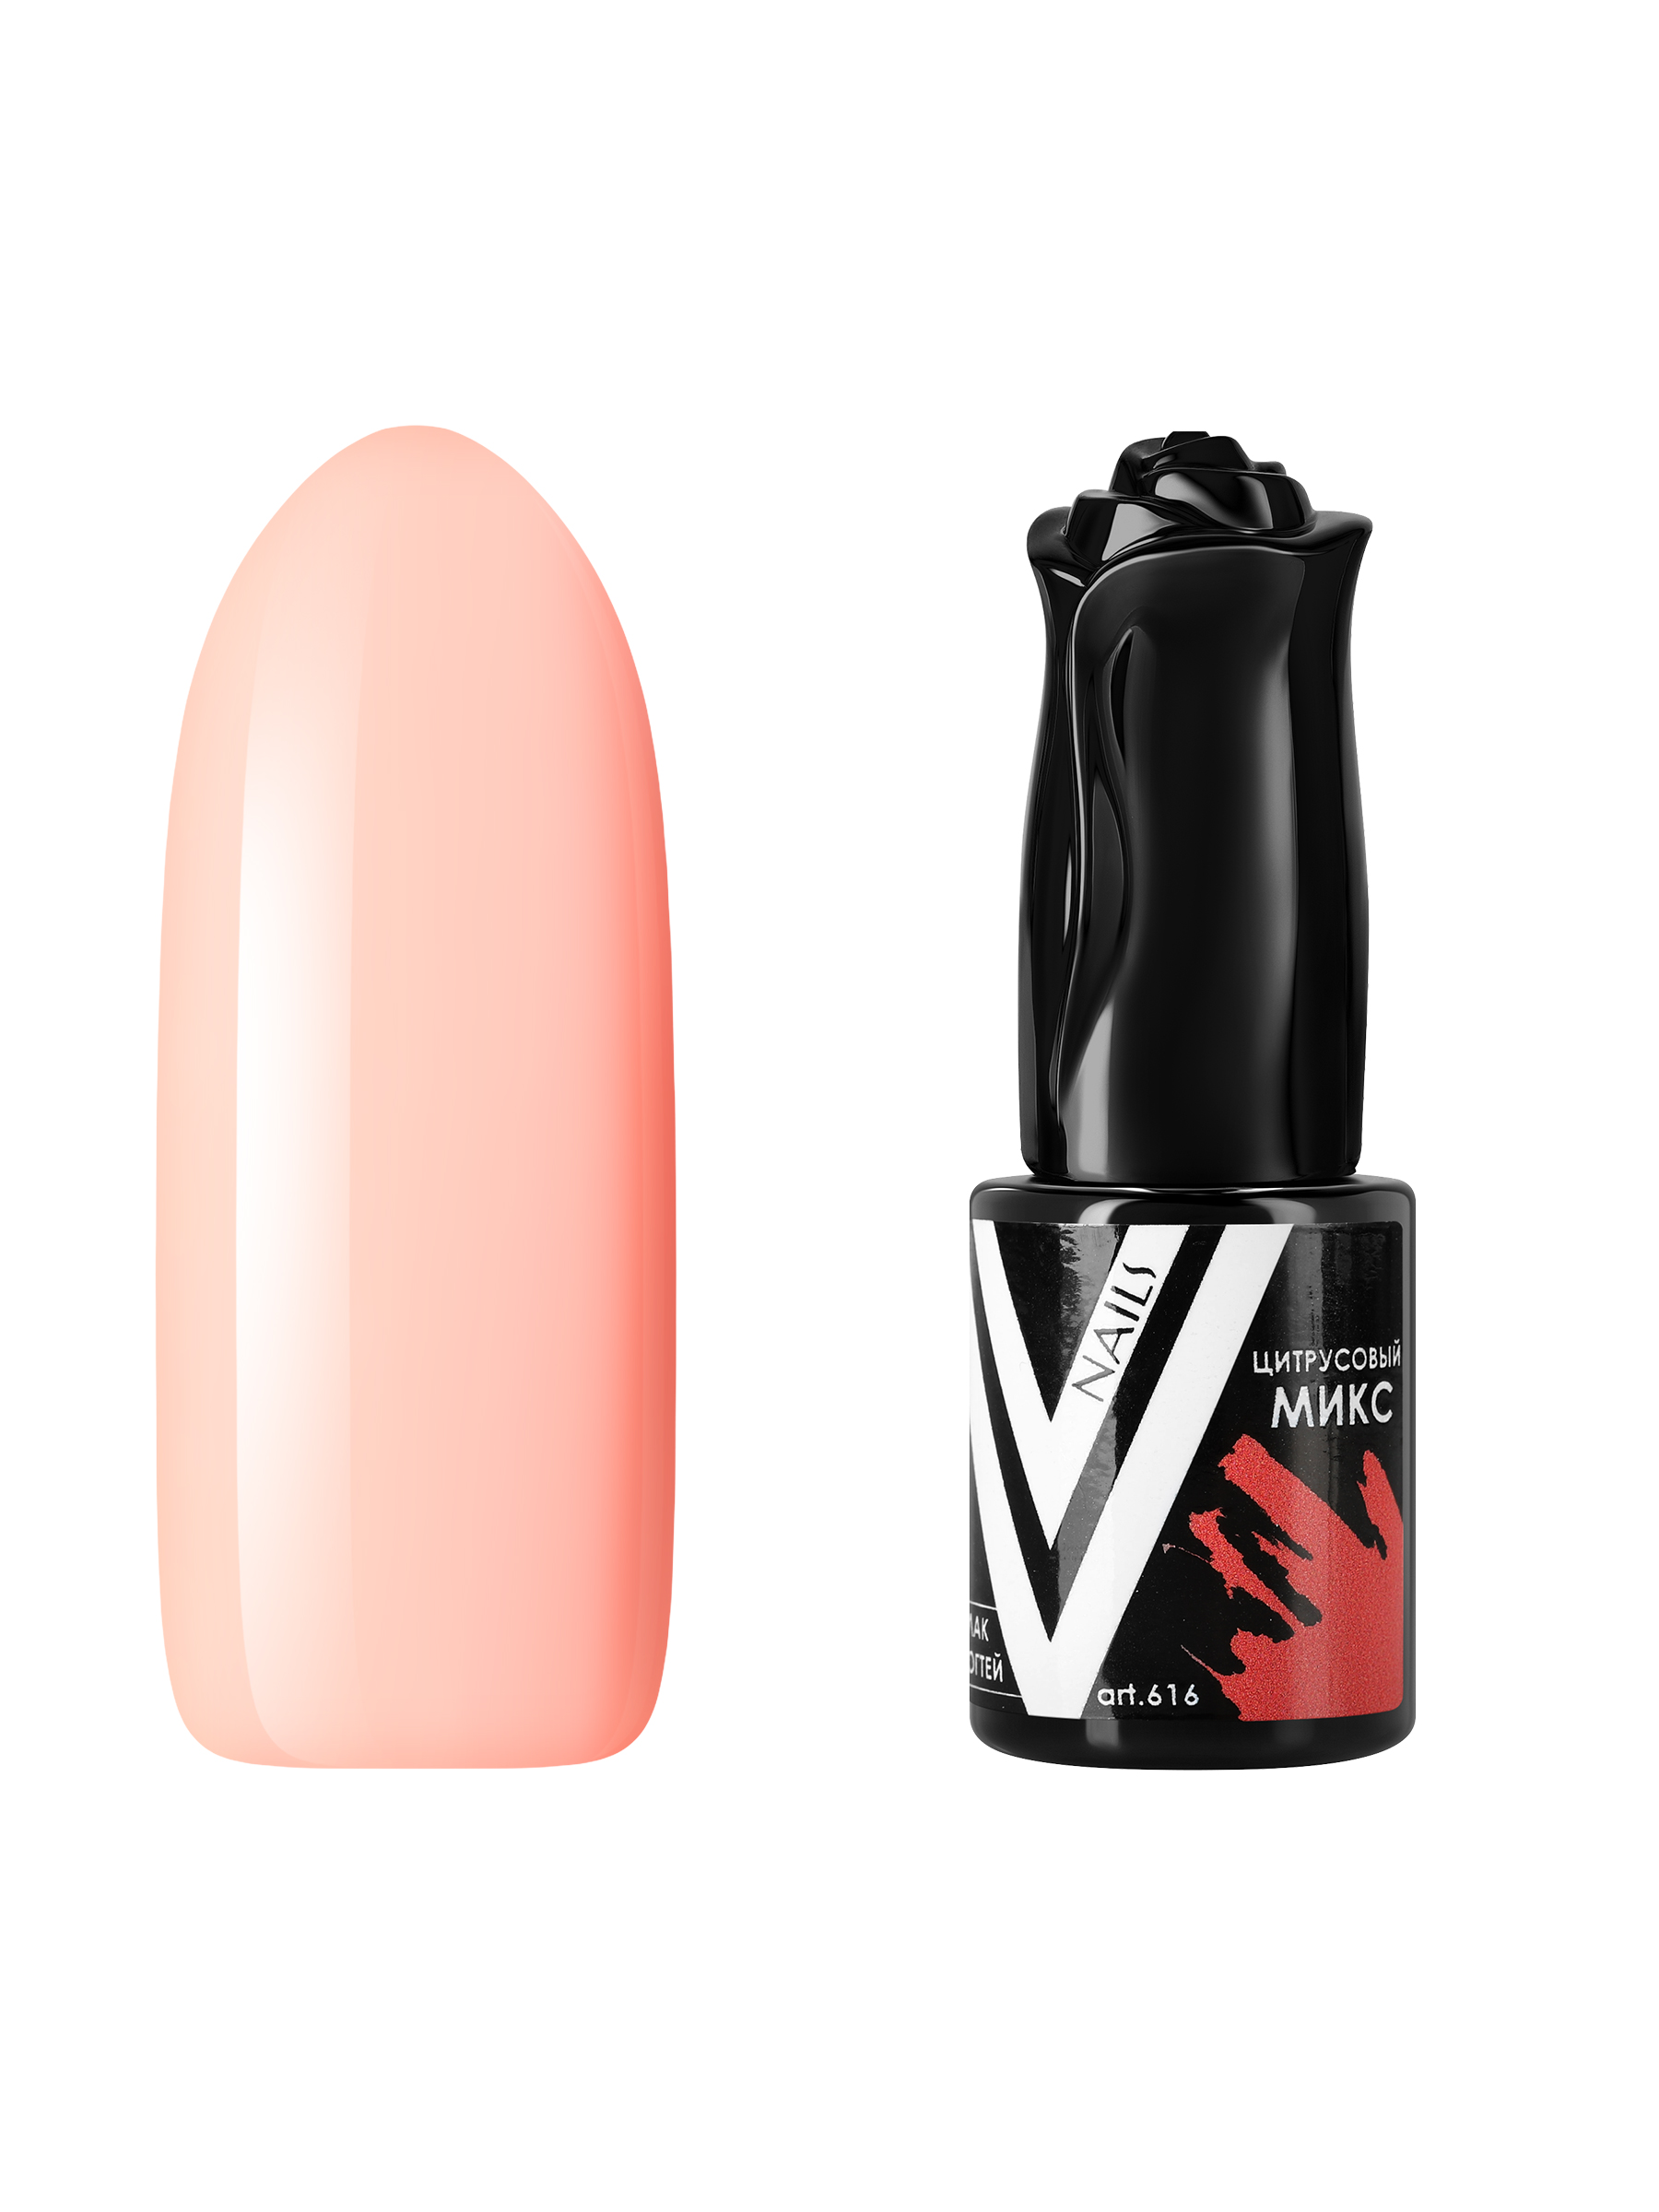 Гель-лак для ногтей Vogue Nails плотный, самовыравнивающийся, светлый, бежевый, 10 мл музыкальный инструмент барабан джембе светлый 25х14х14 см микс